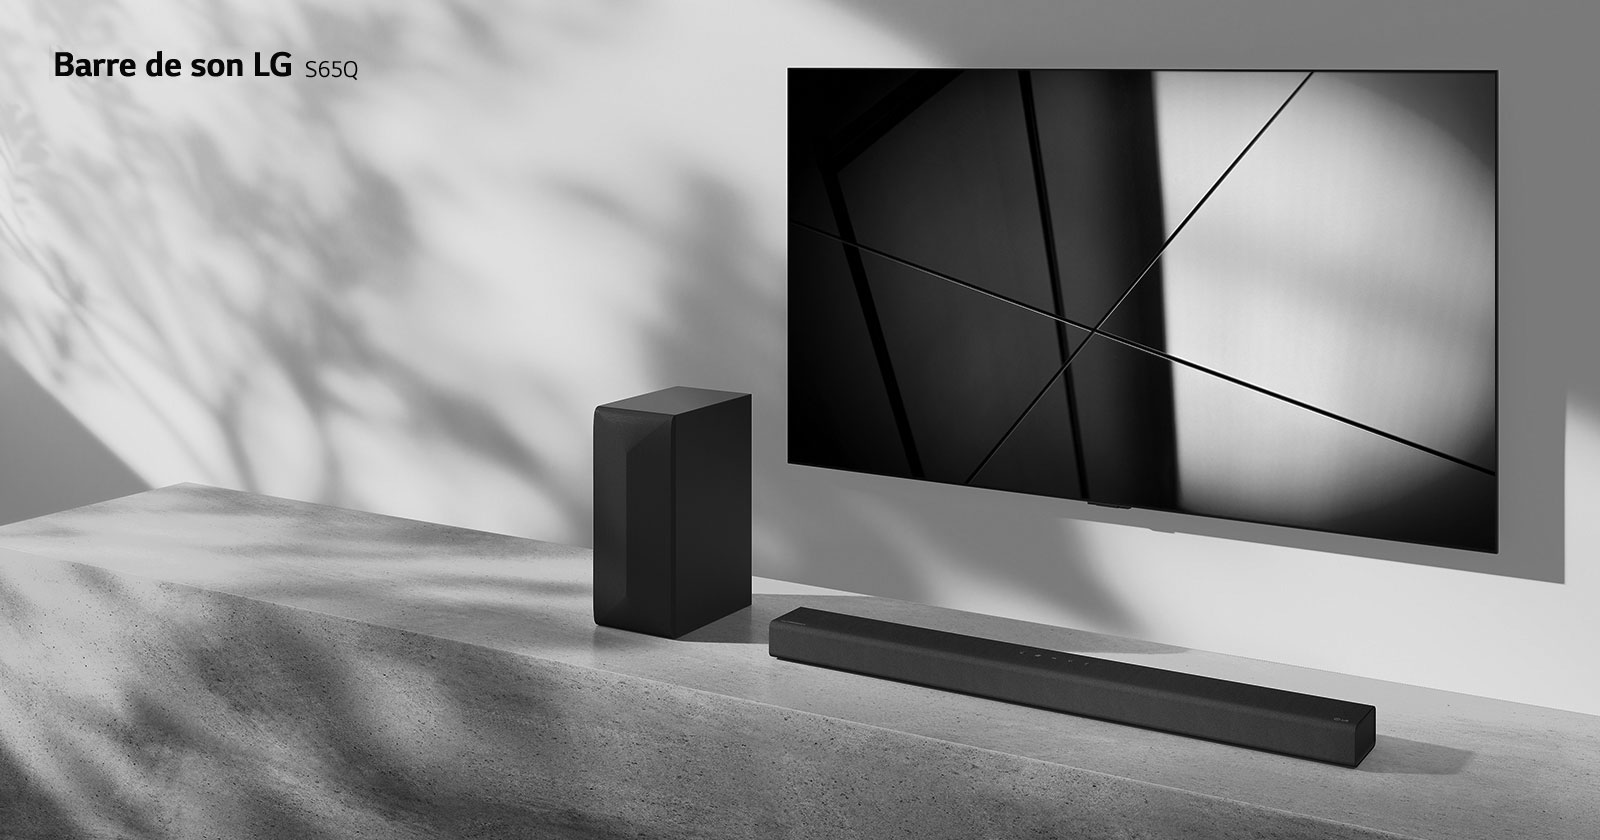 La barre de son S90QY de LG et le téléviseur LG sont placés ensemble dans le salon. Le téléviseur est allumé et projette une image en noir et blanc.